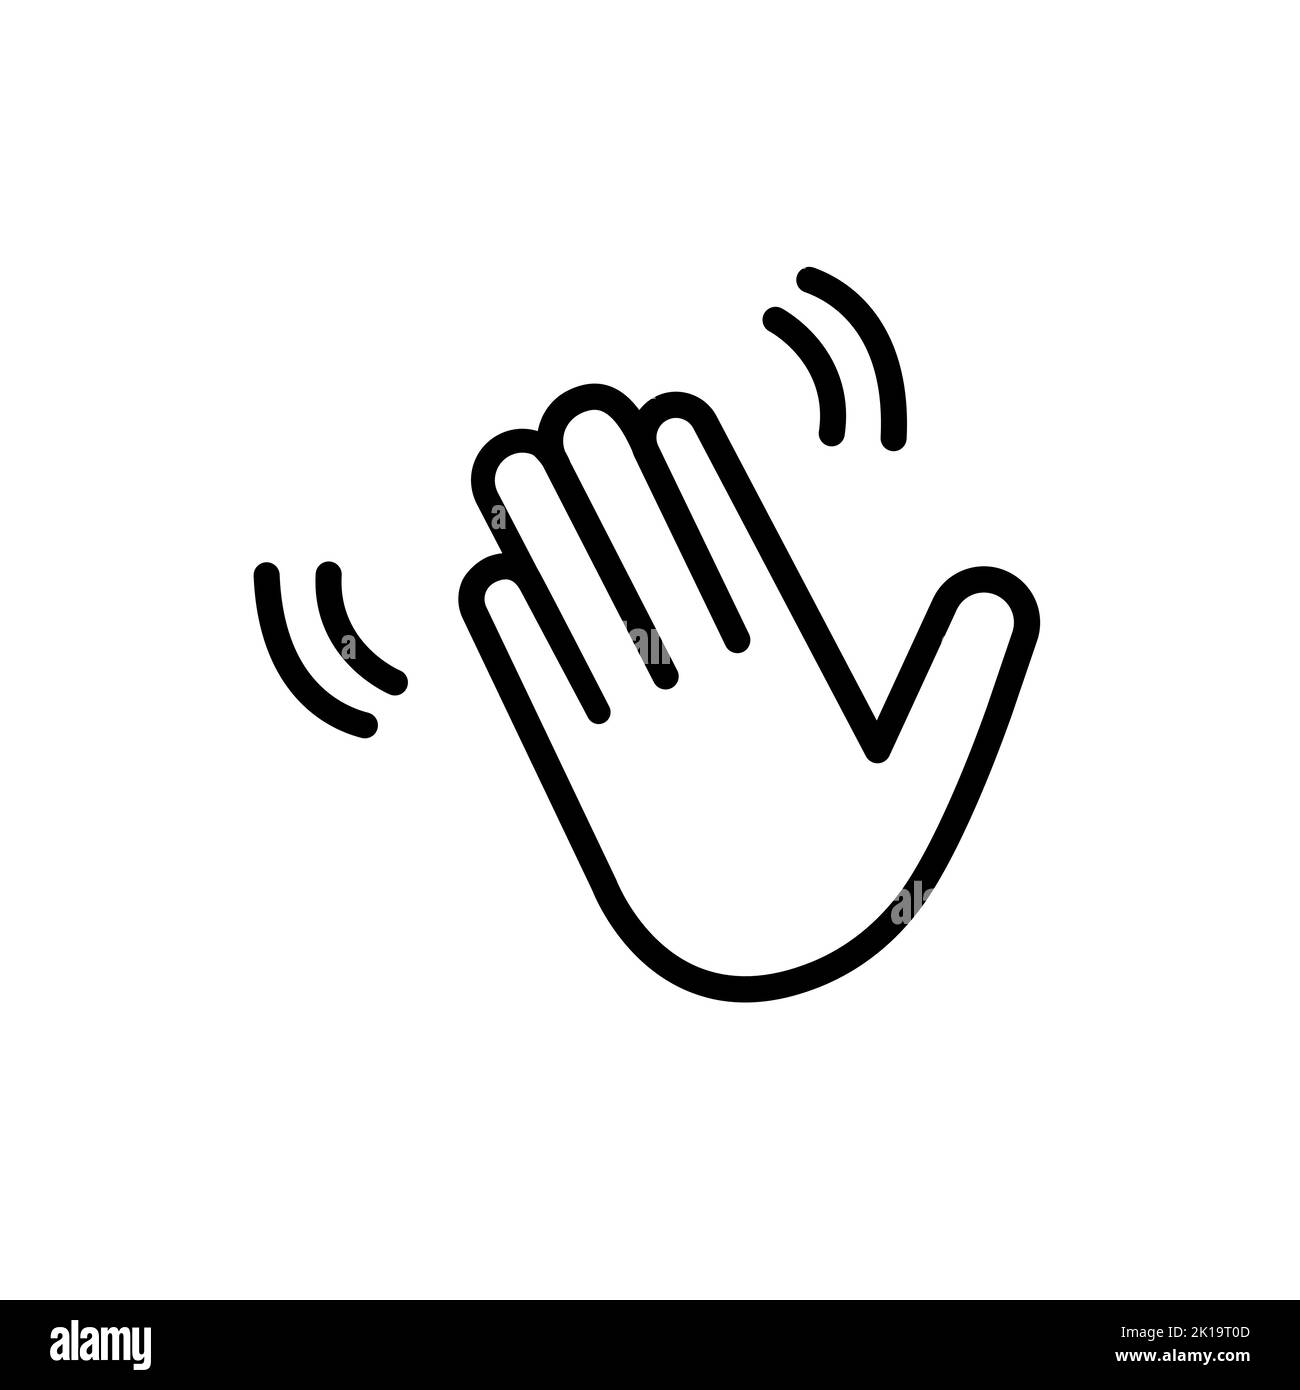 icona lineare di palma nera. concetto di invito amichevole, mano d'onda hallo, messaggio verbale di saluto di saluto, divertente messaggio di saluto comico, howdy. semplice obje moderno Illustrazione Vettoriale